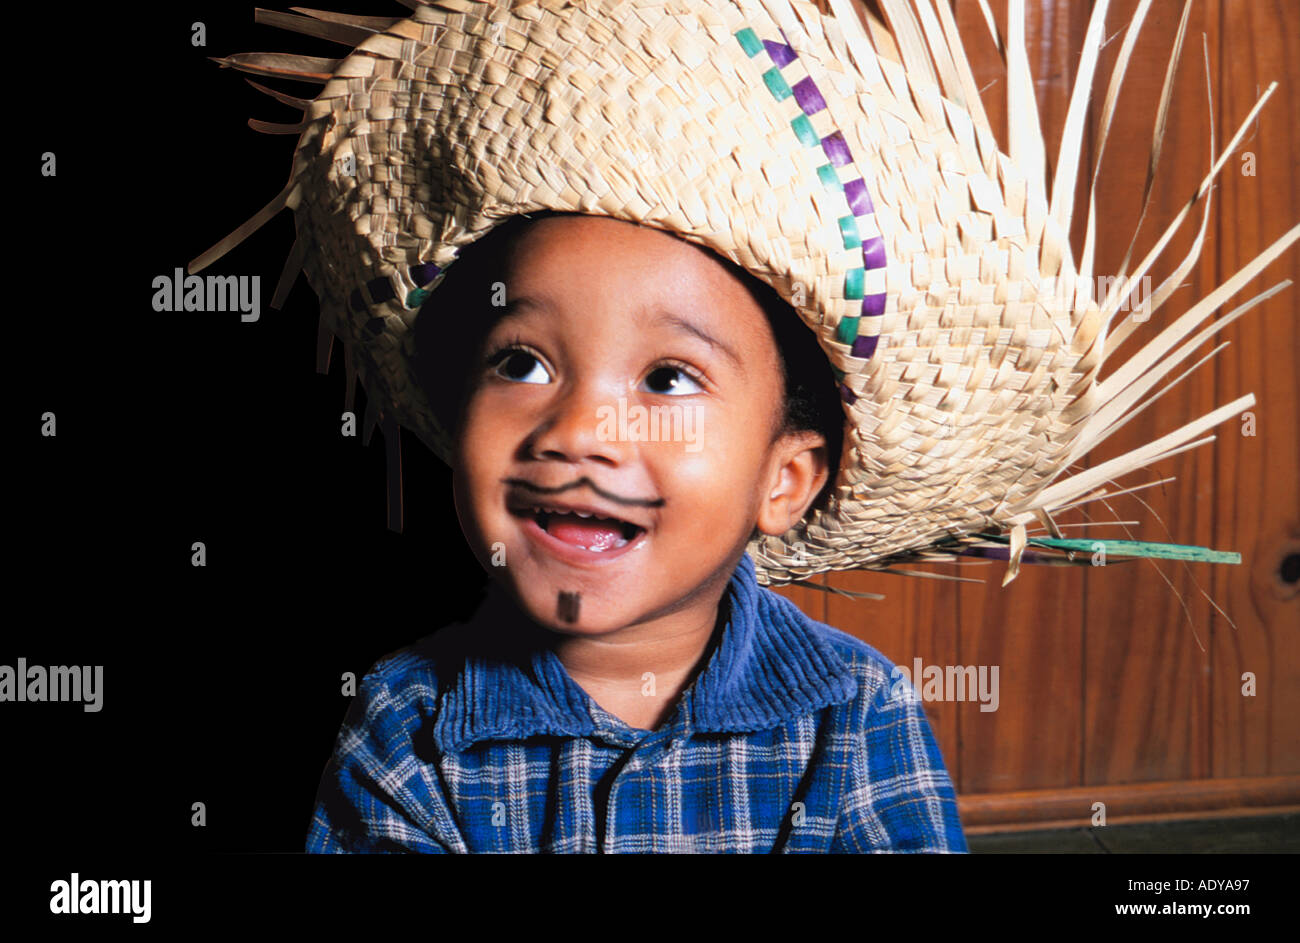 Feiern ich kleine weiße Junge brasilianische Lächeln Lächeln Wicker Hut Fahnen Festa Festas Junina Juni Feierlichkeiten 0 5 konzeptionelle Cel Stockfoto